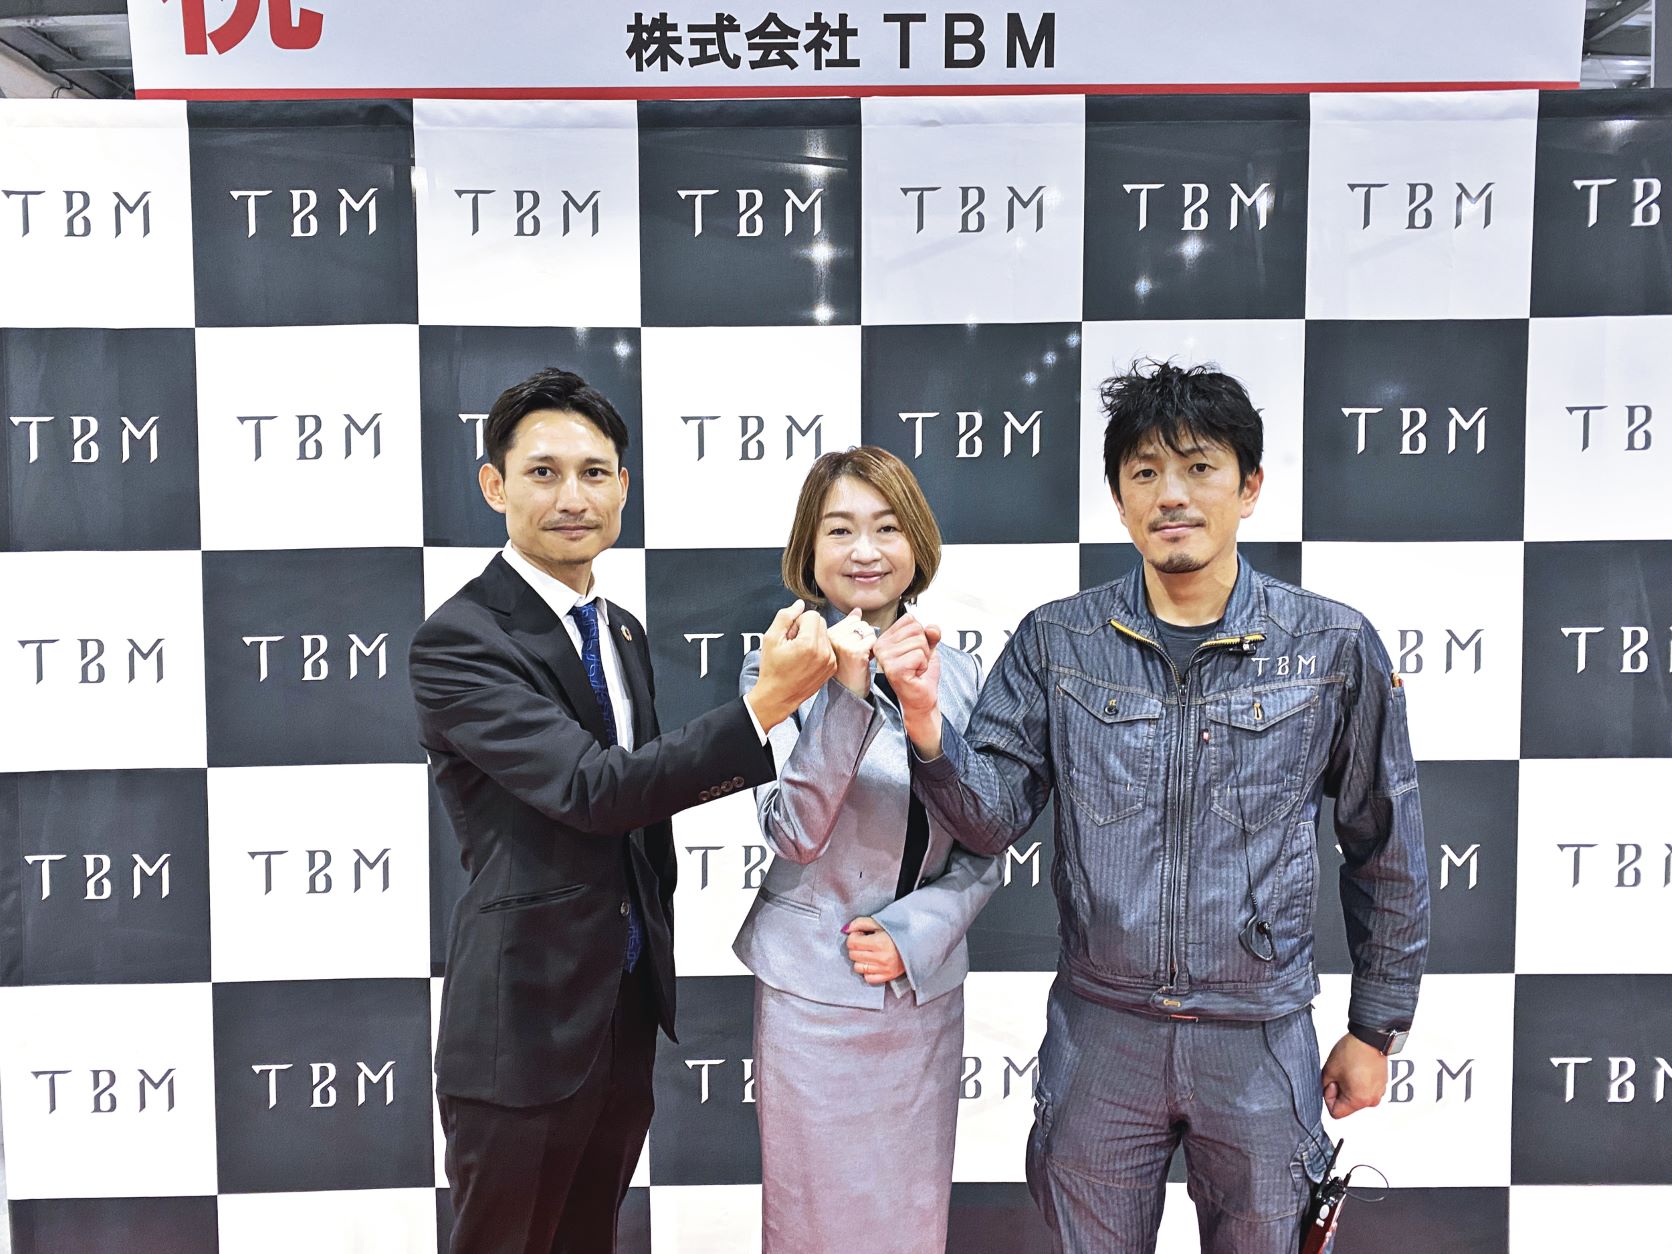 Photo-06_Inaguration-Ceremony_TBM-Plant_Mr.Yamaguchi_Ms.Sasaki_Mr.Fukuyama_resized